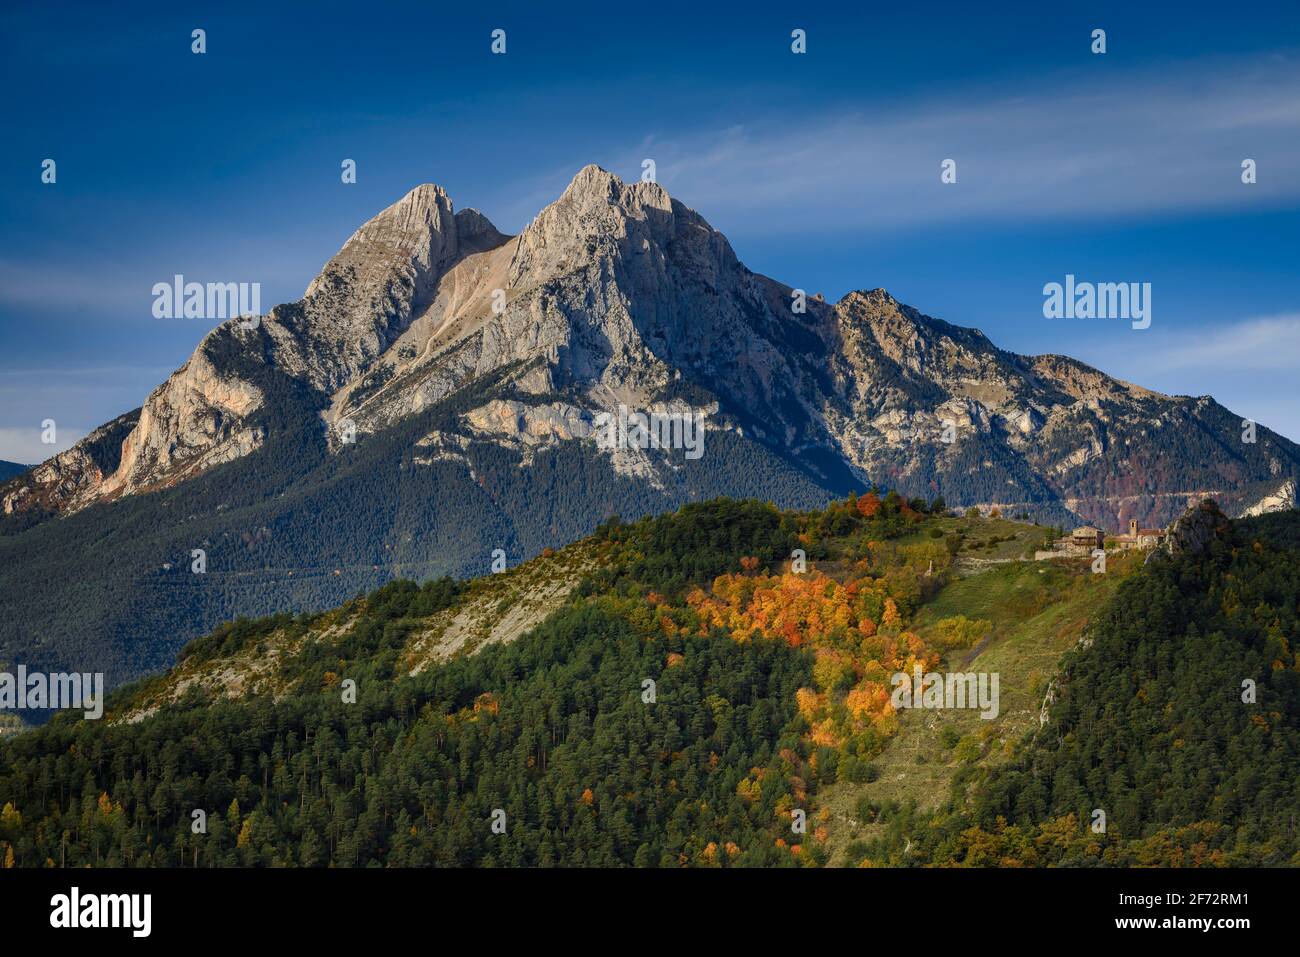 Monte Pedraforza in autunno, visto dal punto di osservazione Mirador Albert Arilla, vicino a Gisclareny (provincia di Barcellona, Catalogna, Spagna, Pirenei) Foto Stock